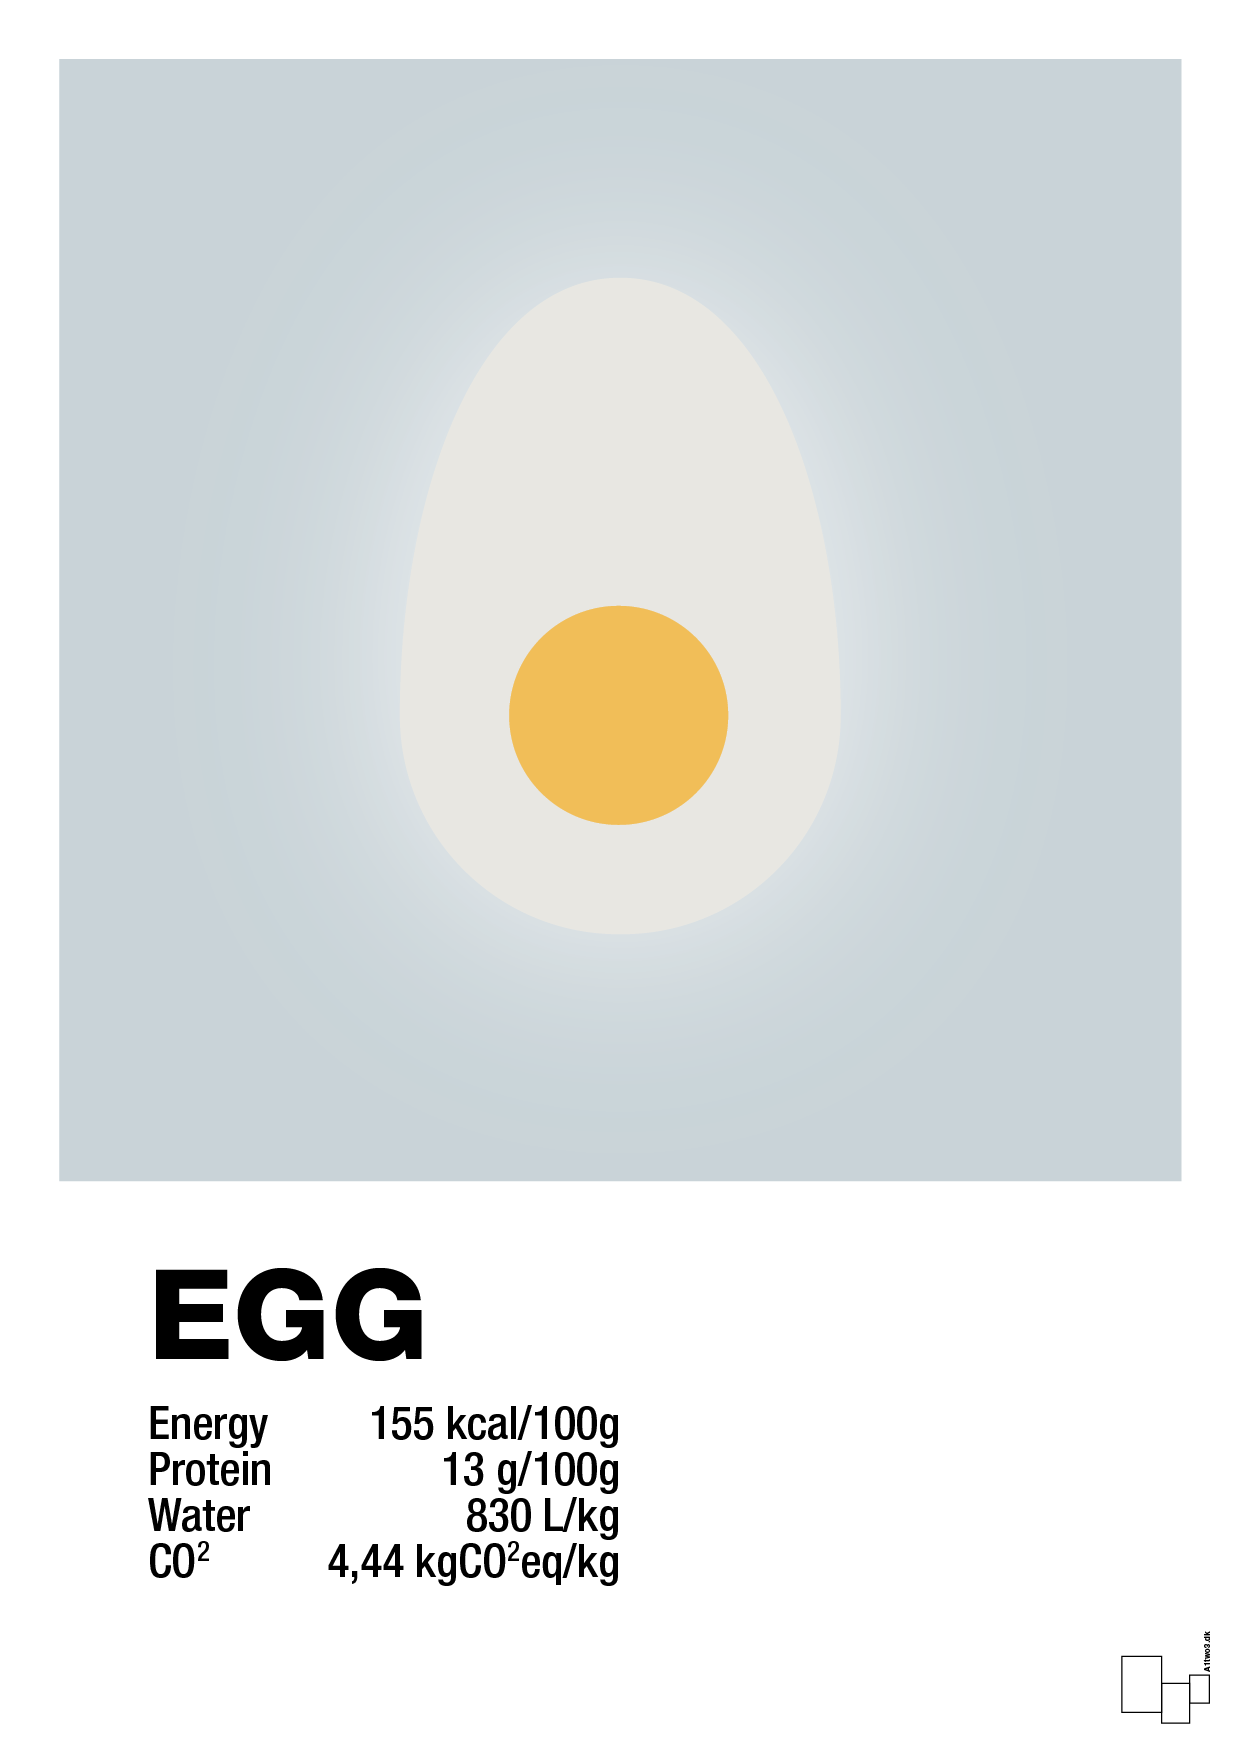 egg nutrition og miljø - Plakat med Mad & Drikke i Light Drizzle